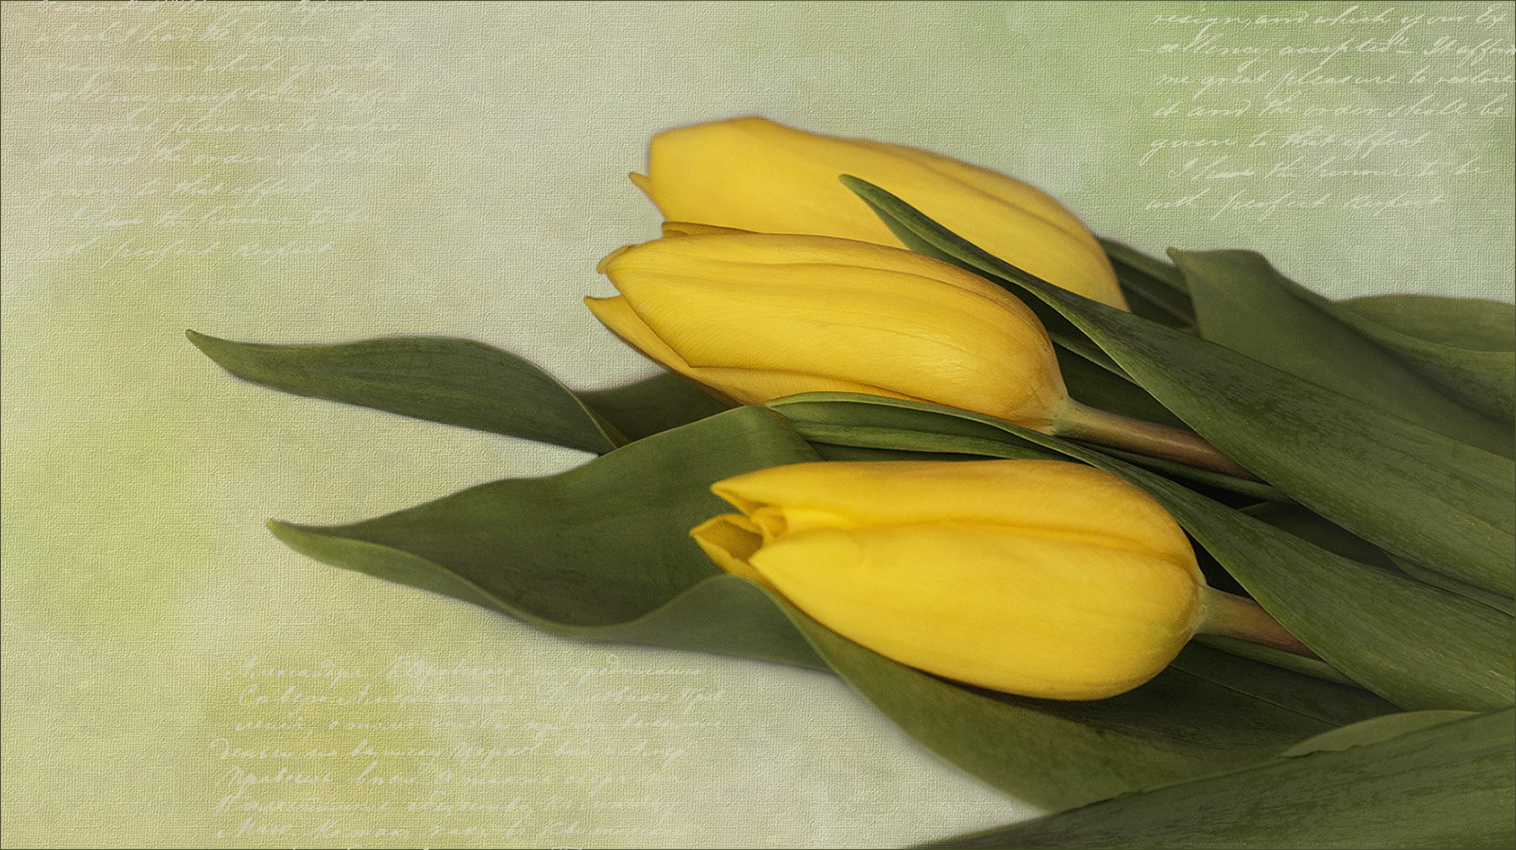 Nochmals die gelben Tulpen...